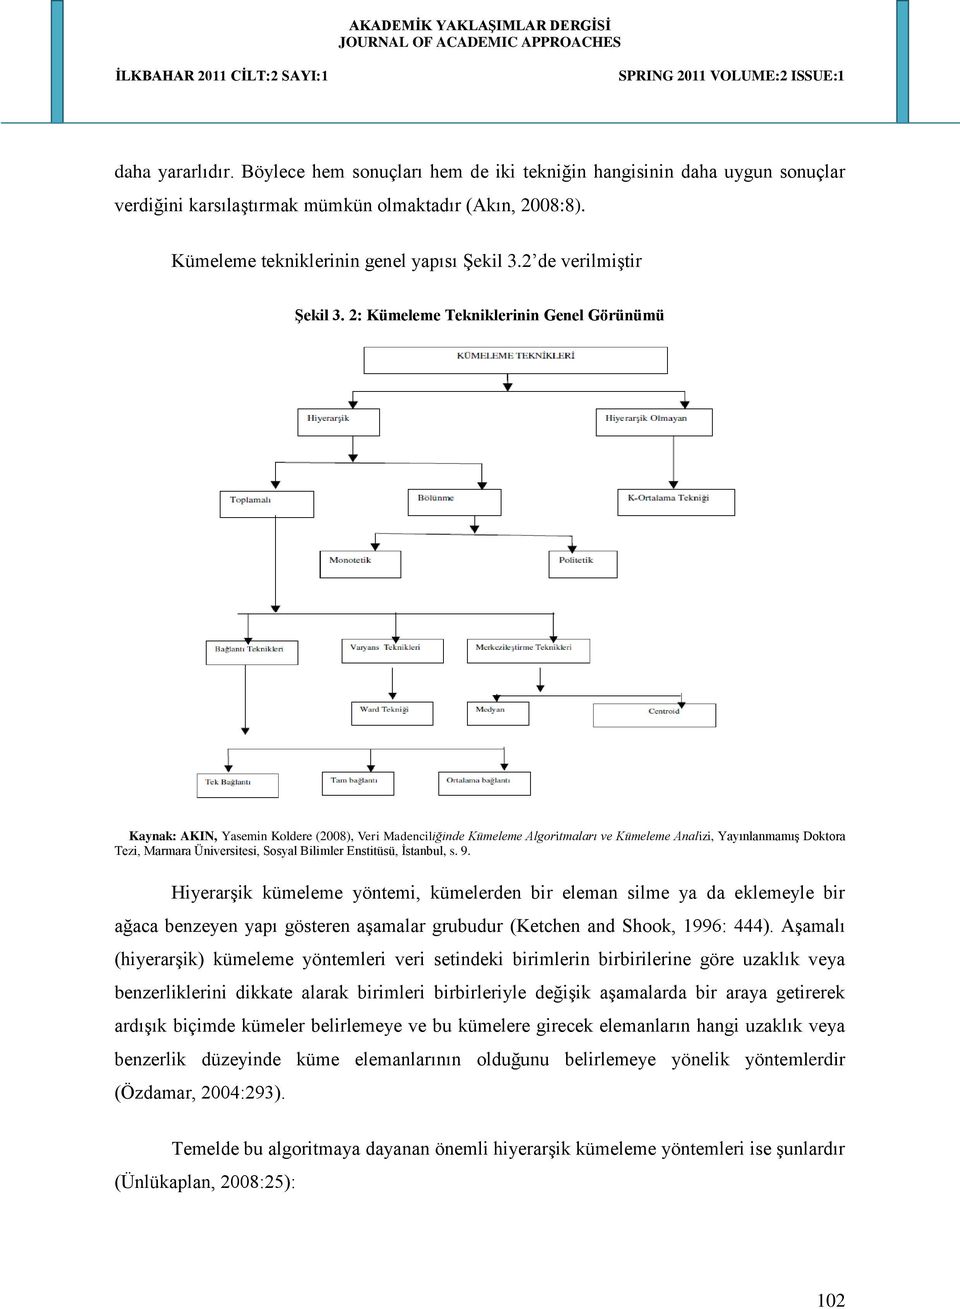 2: Kümeleme Tekniklerinin Genel Görünümü Kaynak: AKIN, Yasemin Koldere (2008), Veri Madenciliğinde Kümeleme Algoritmaları ve Kümeleme Analizi, Yayınlanmamış Doktora Tezi, Marmara Üniversitesi, Sosyal